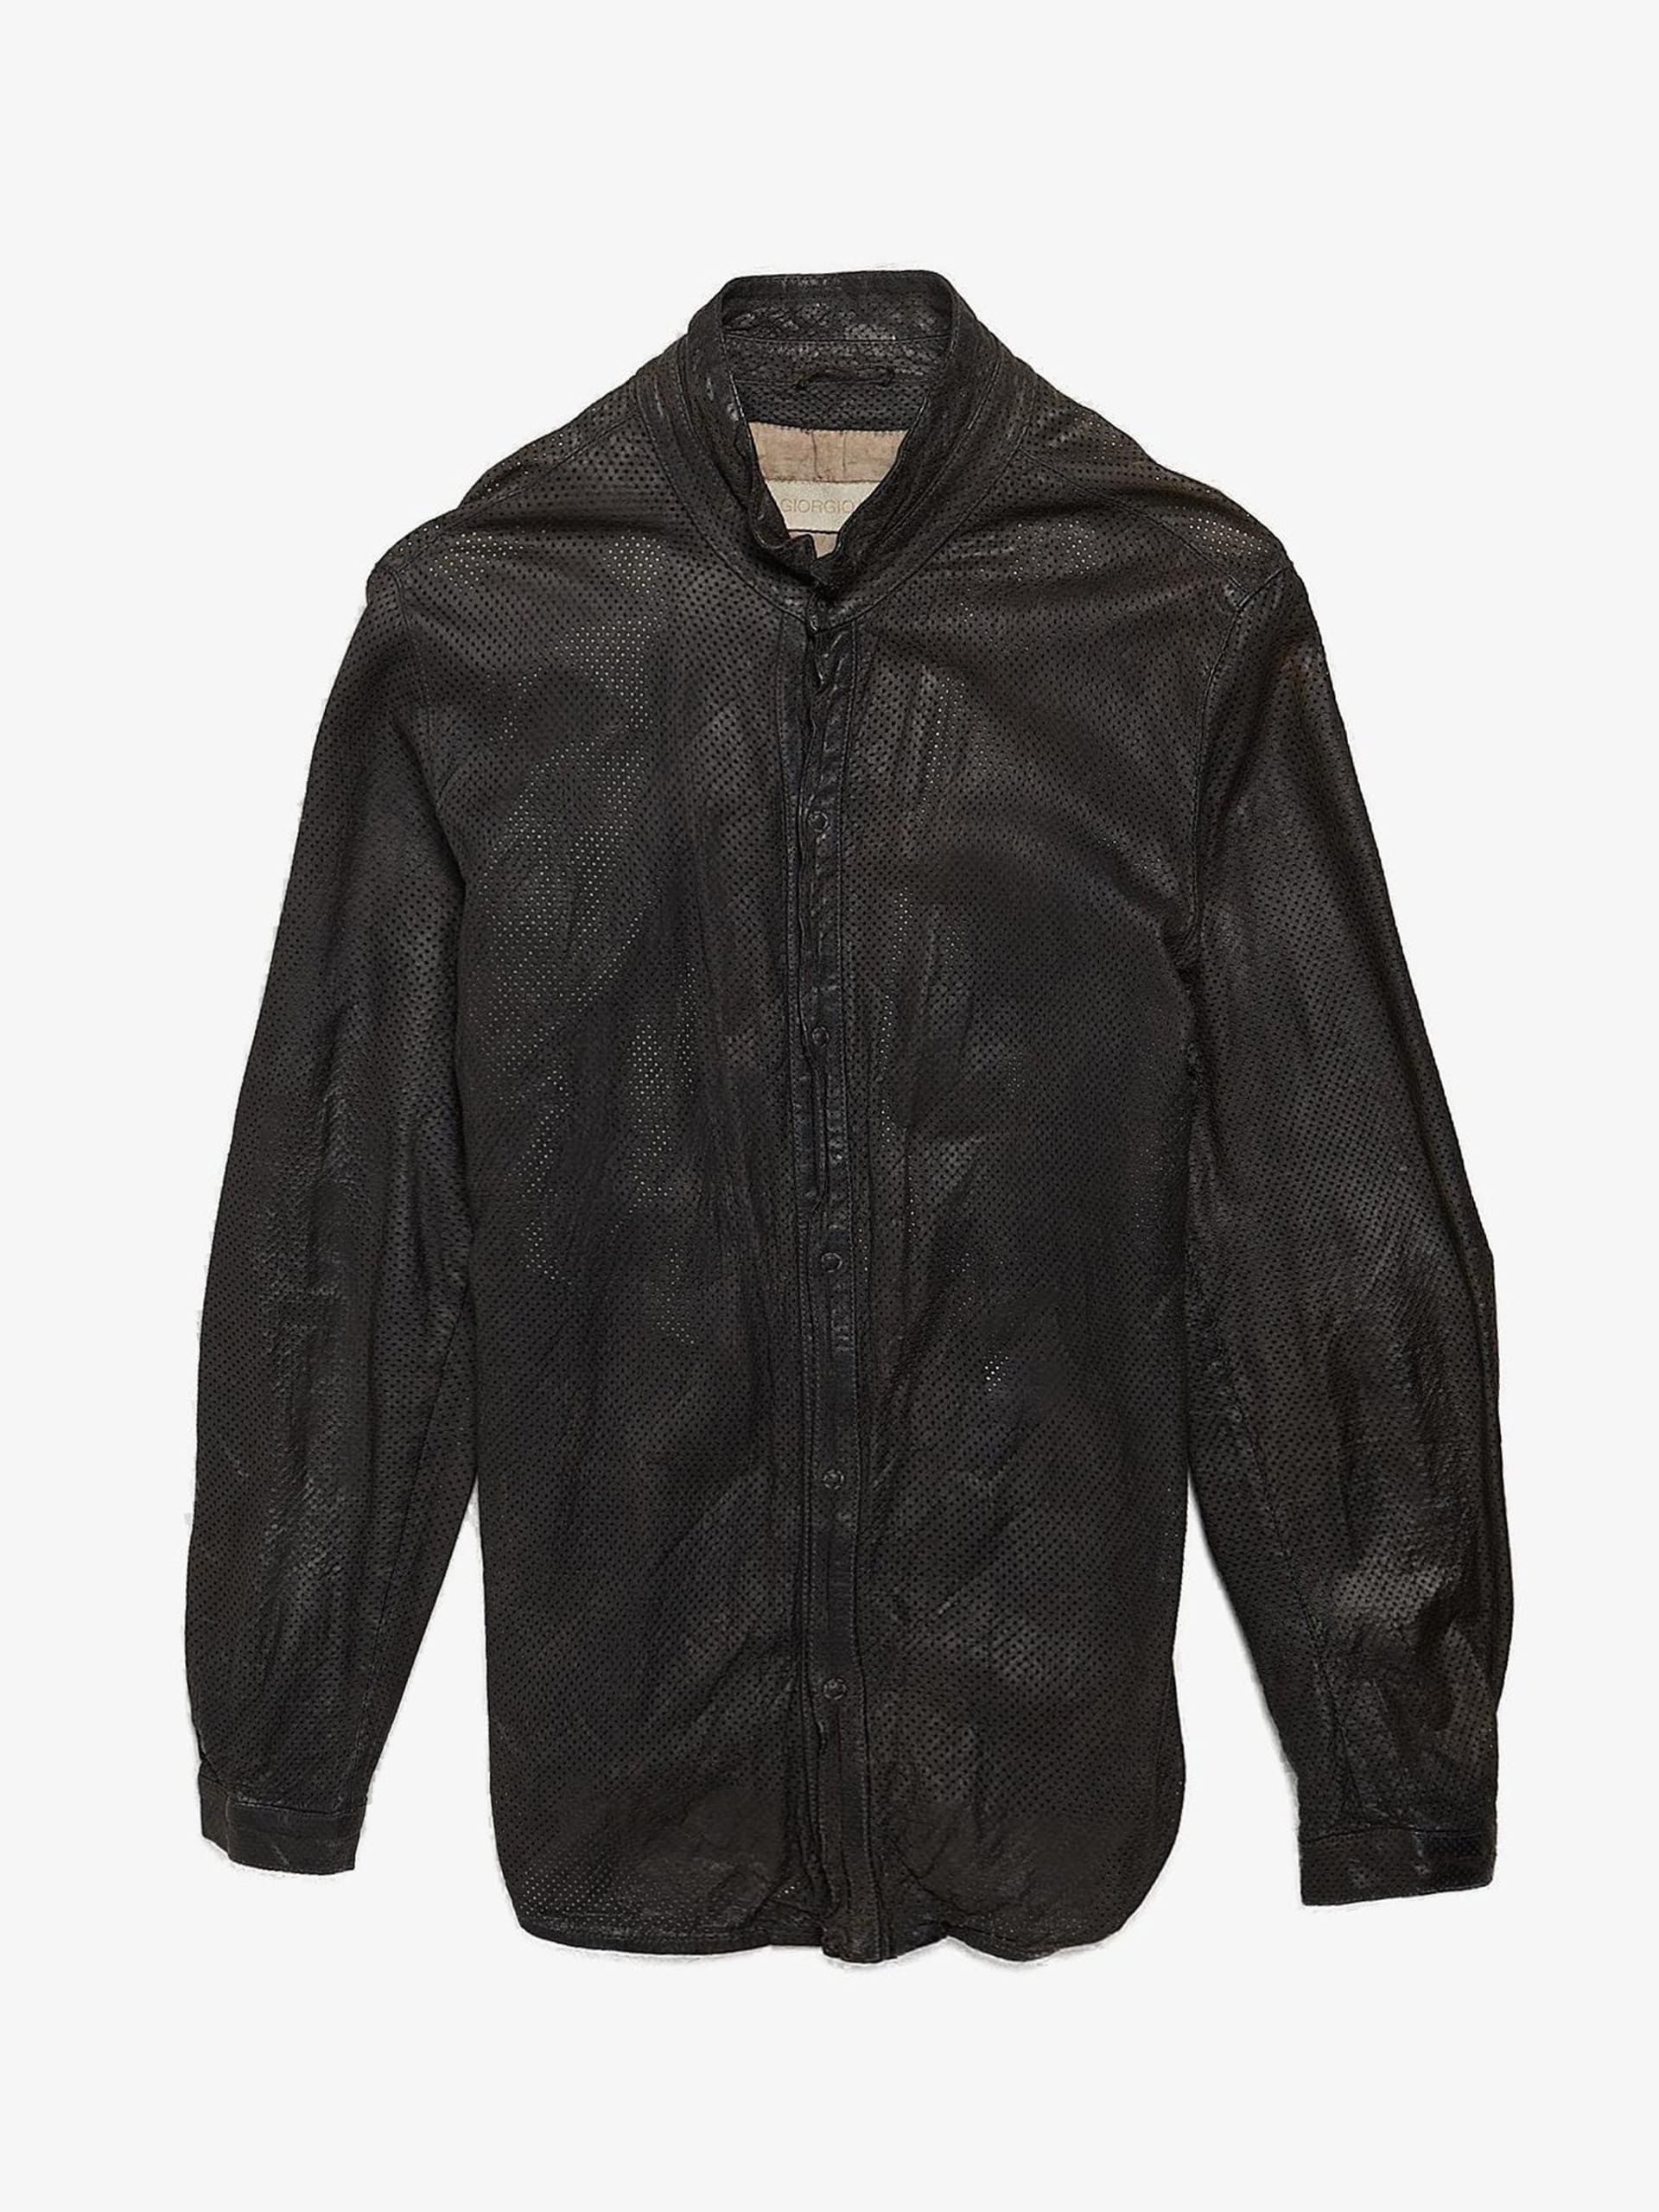 Giorgio Brato Dark Gray Lazer Cut Leather Jacket | Grailed